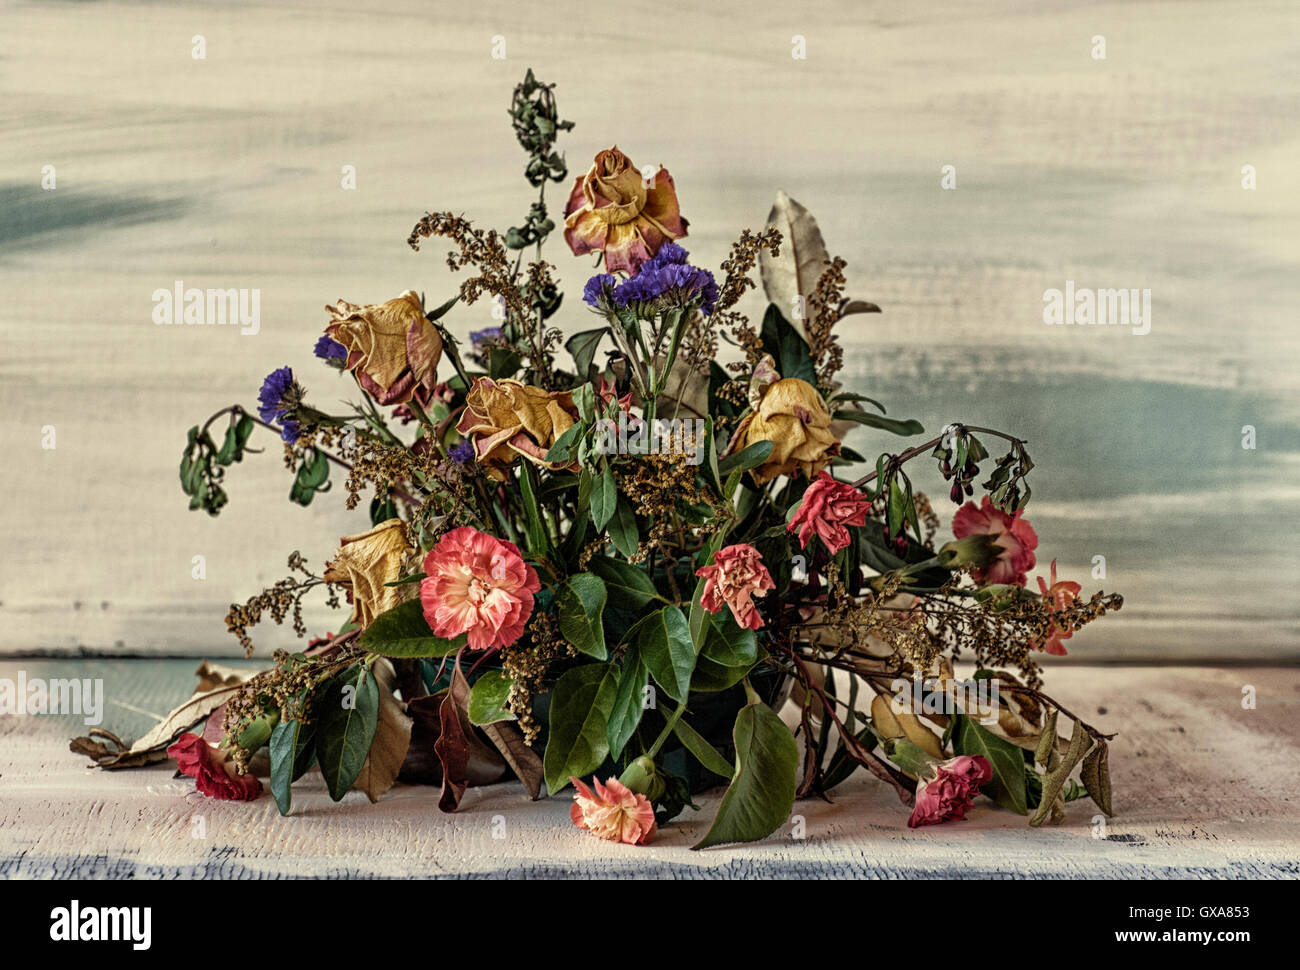 Un arrangement de fleurs mortes Banque D'Images